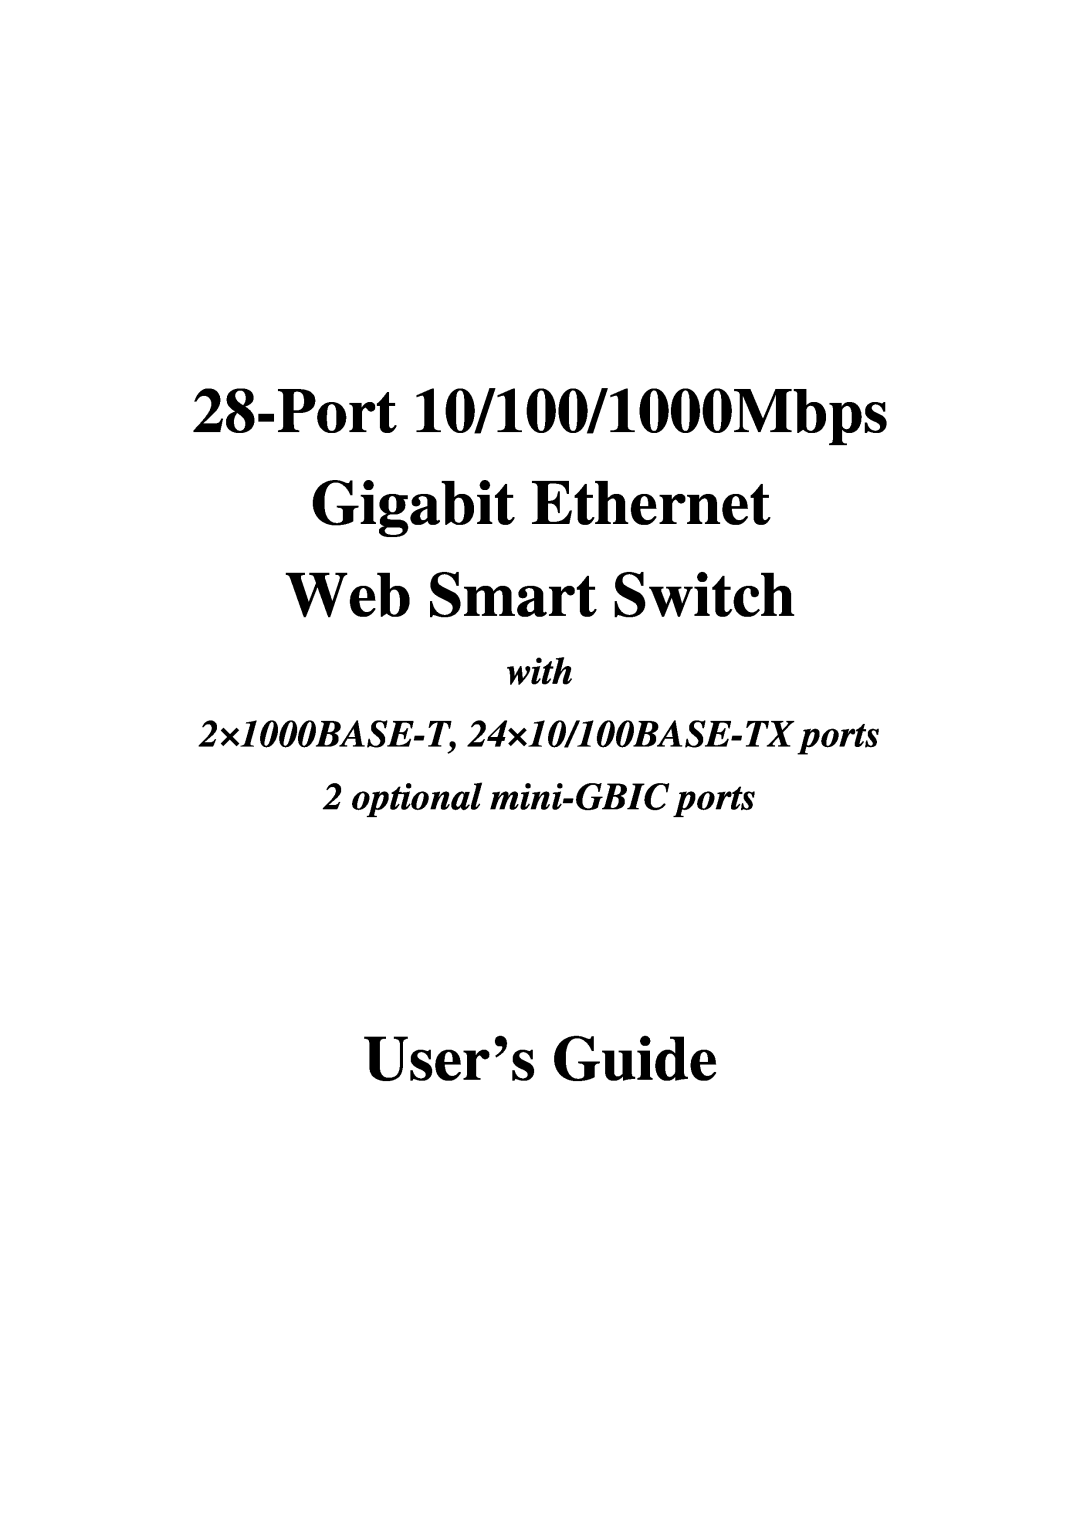 TRENDnet 21000BASE-T, 2410/100BASE-TX manual Port 10/100/1000Mbps, Gigabit Ethernet Web Smart Switch, User’s Guide 